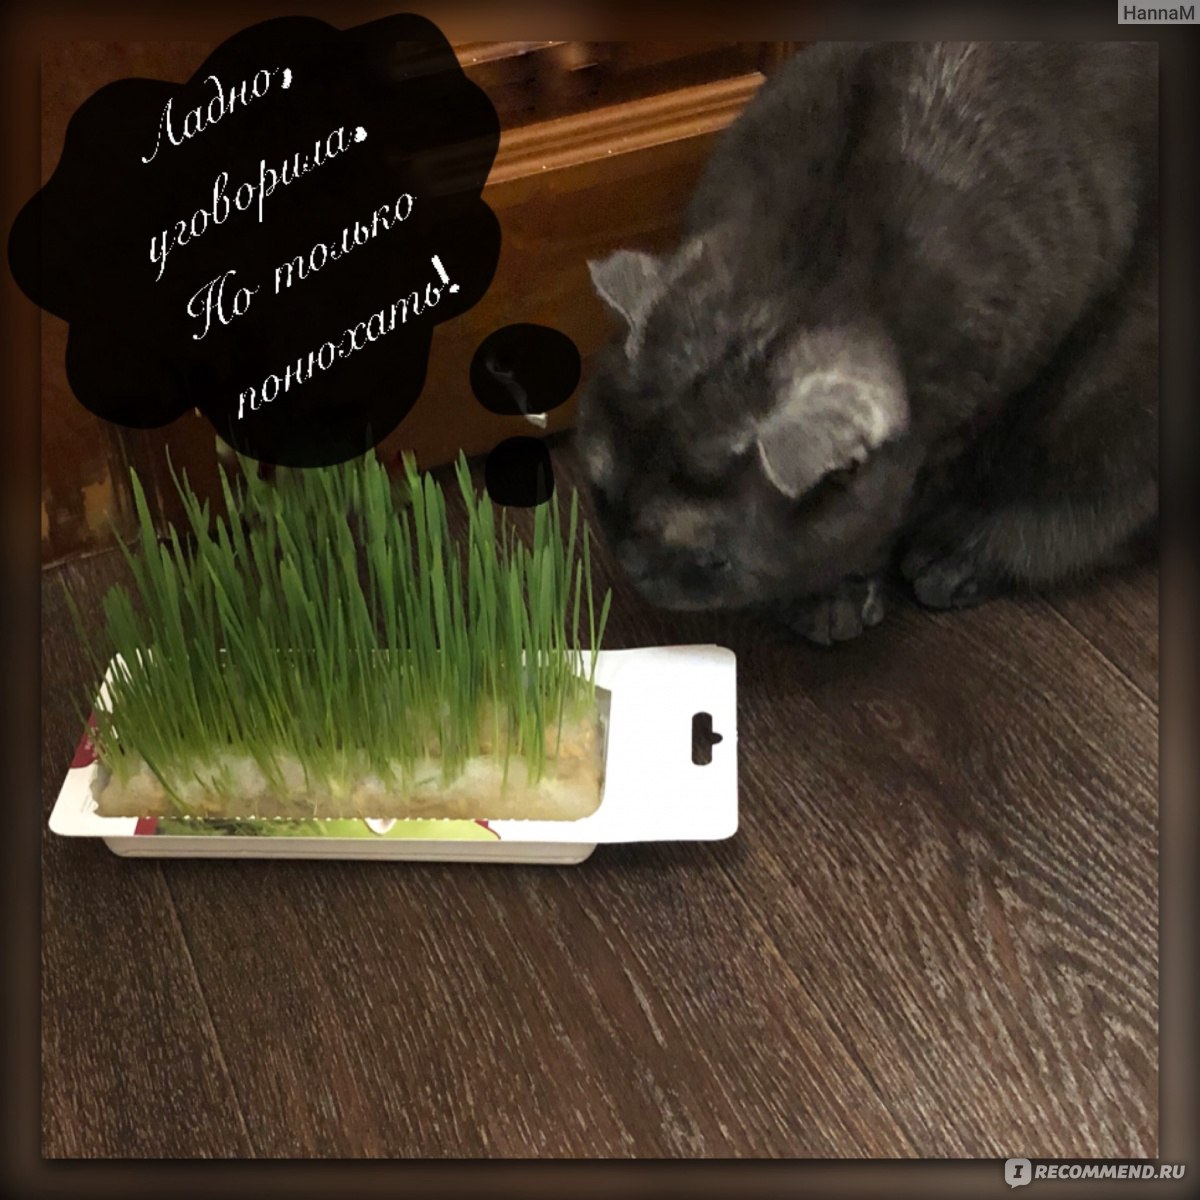 Сеем траву для кошек